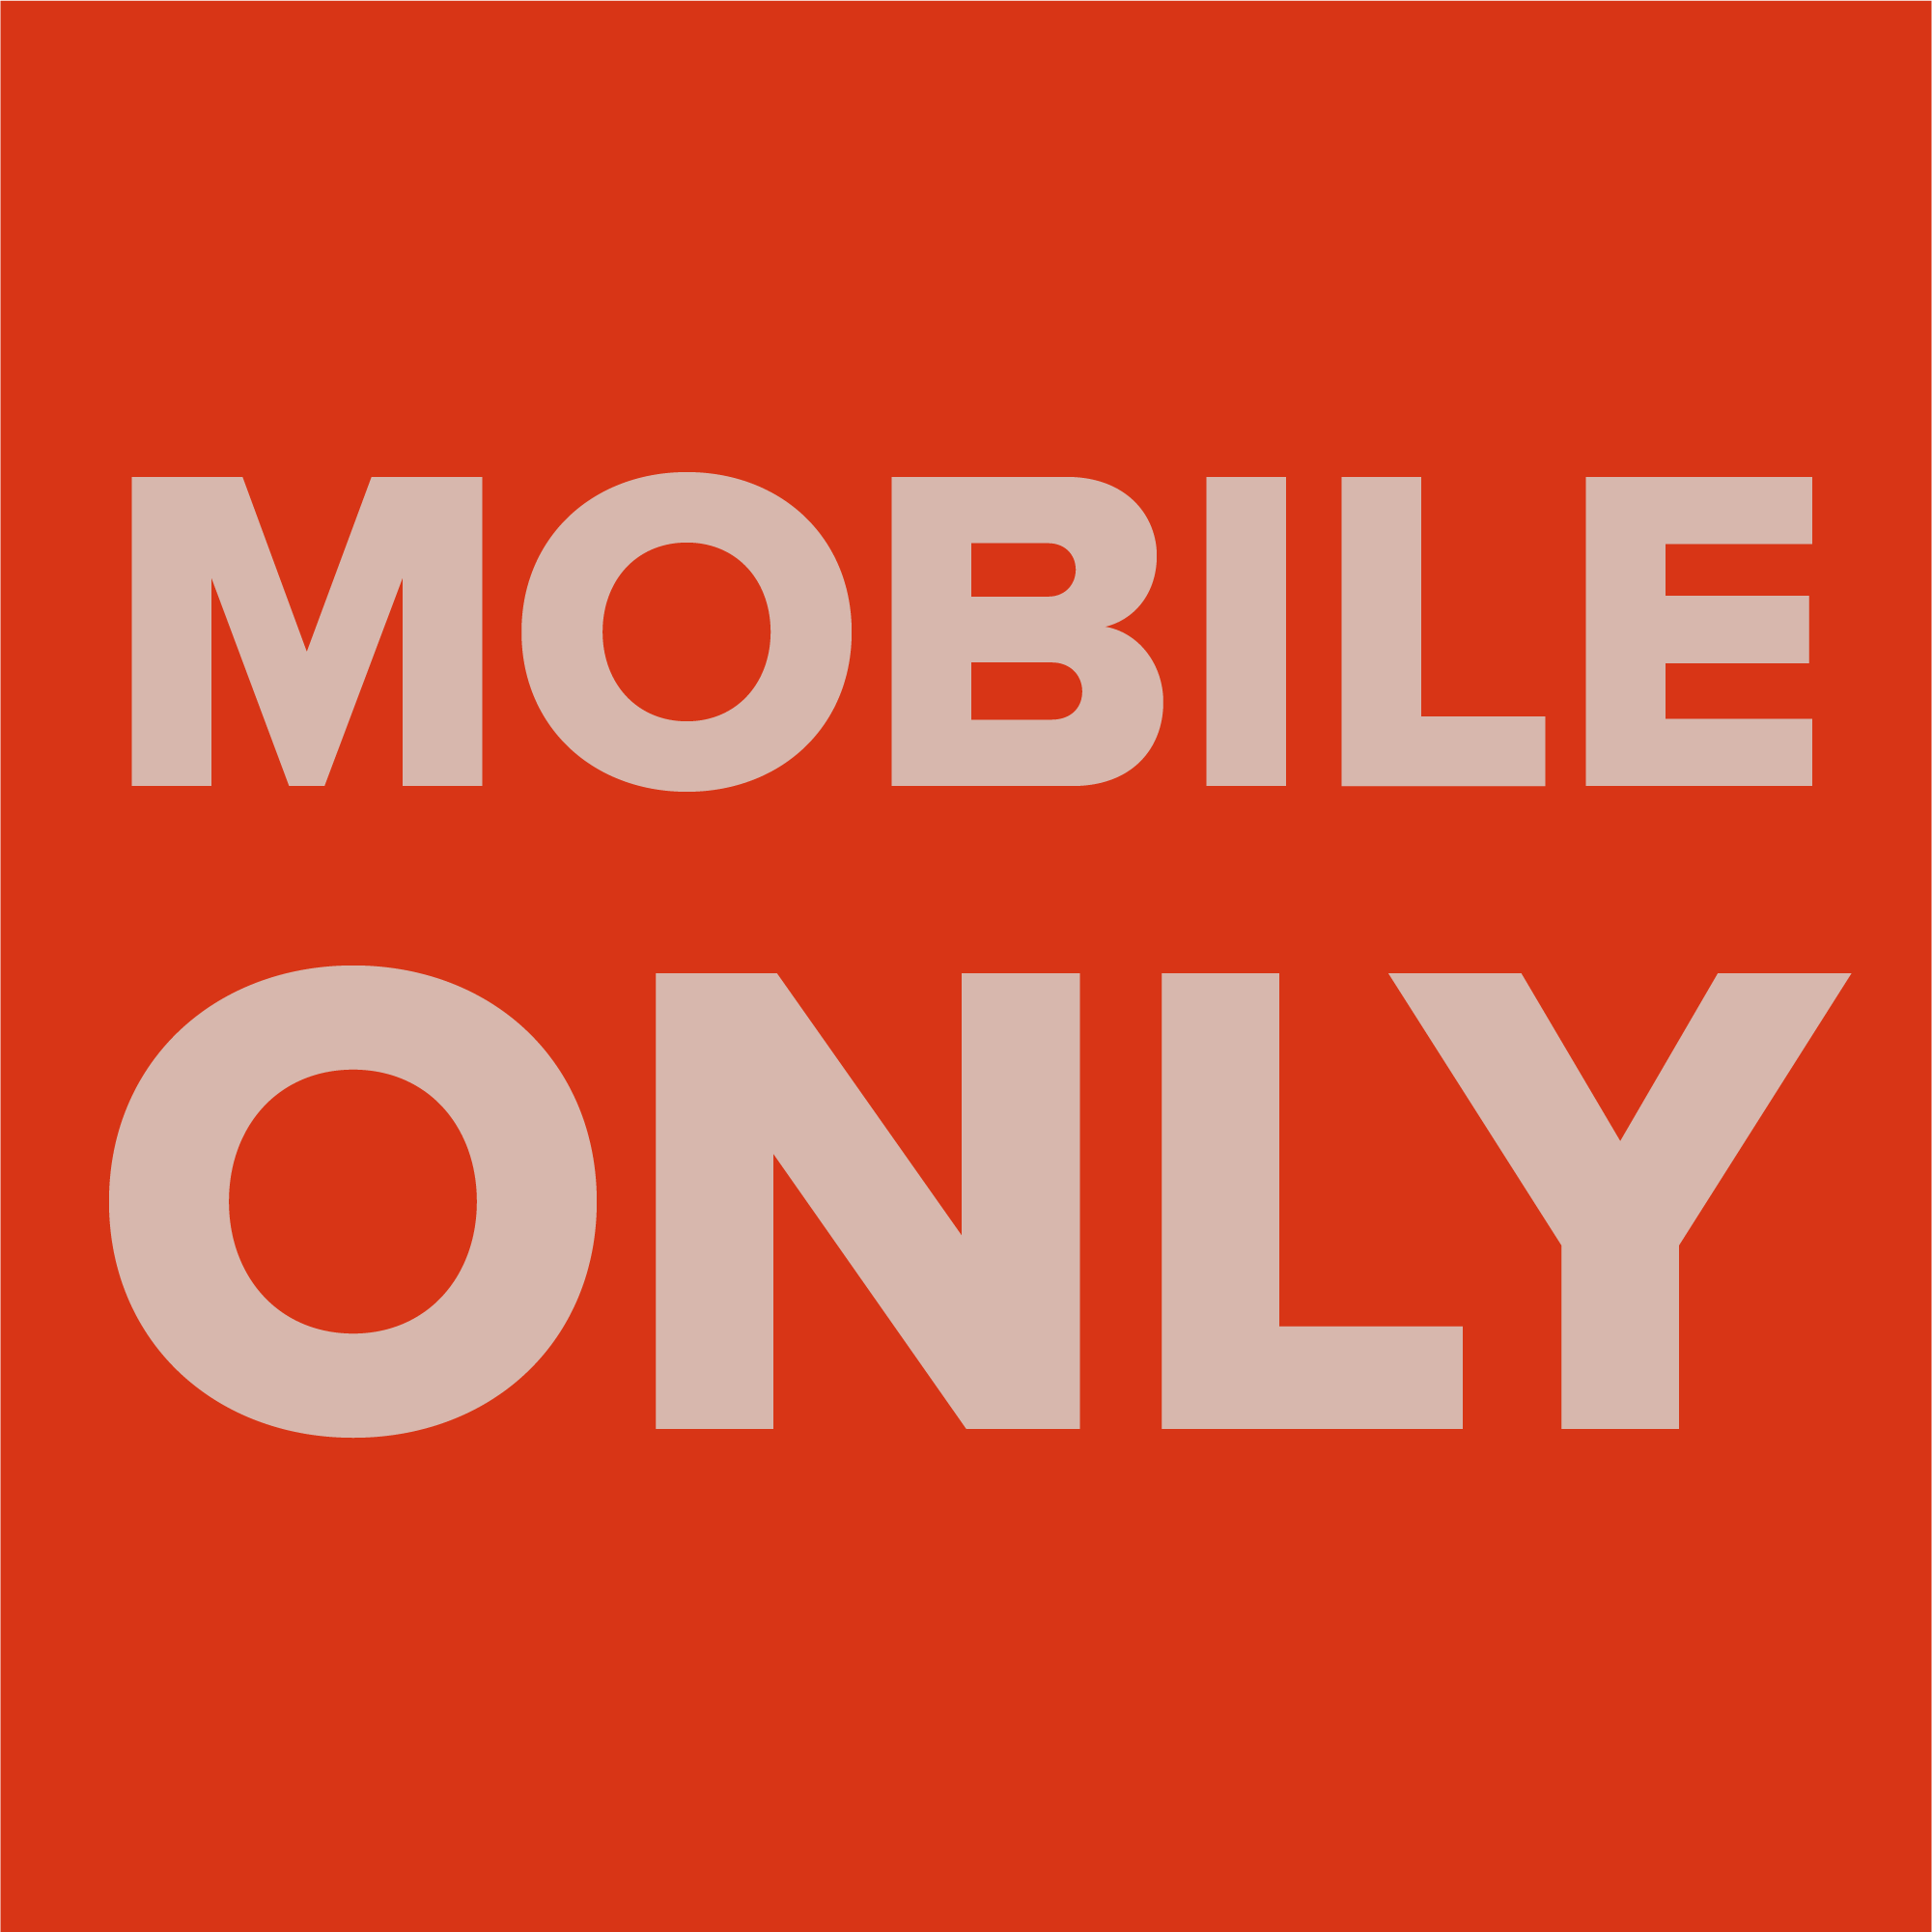 Dieses Bild enthält den Text "Mobile Only" und soll anschaulich für die Google-Strategie sein, die besagt, dass eine Optimierung nur für Mobile Endgeräte Priorität hat.